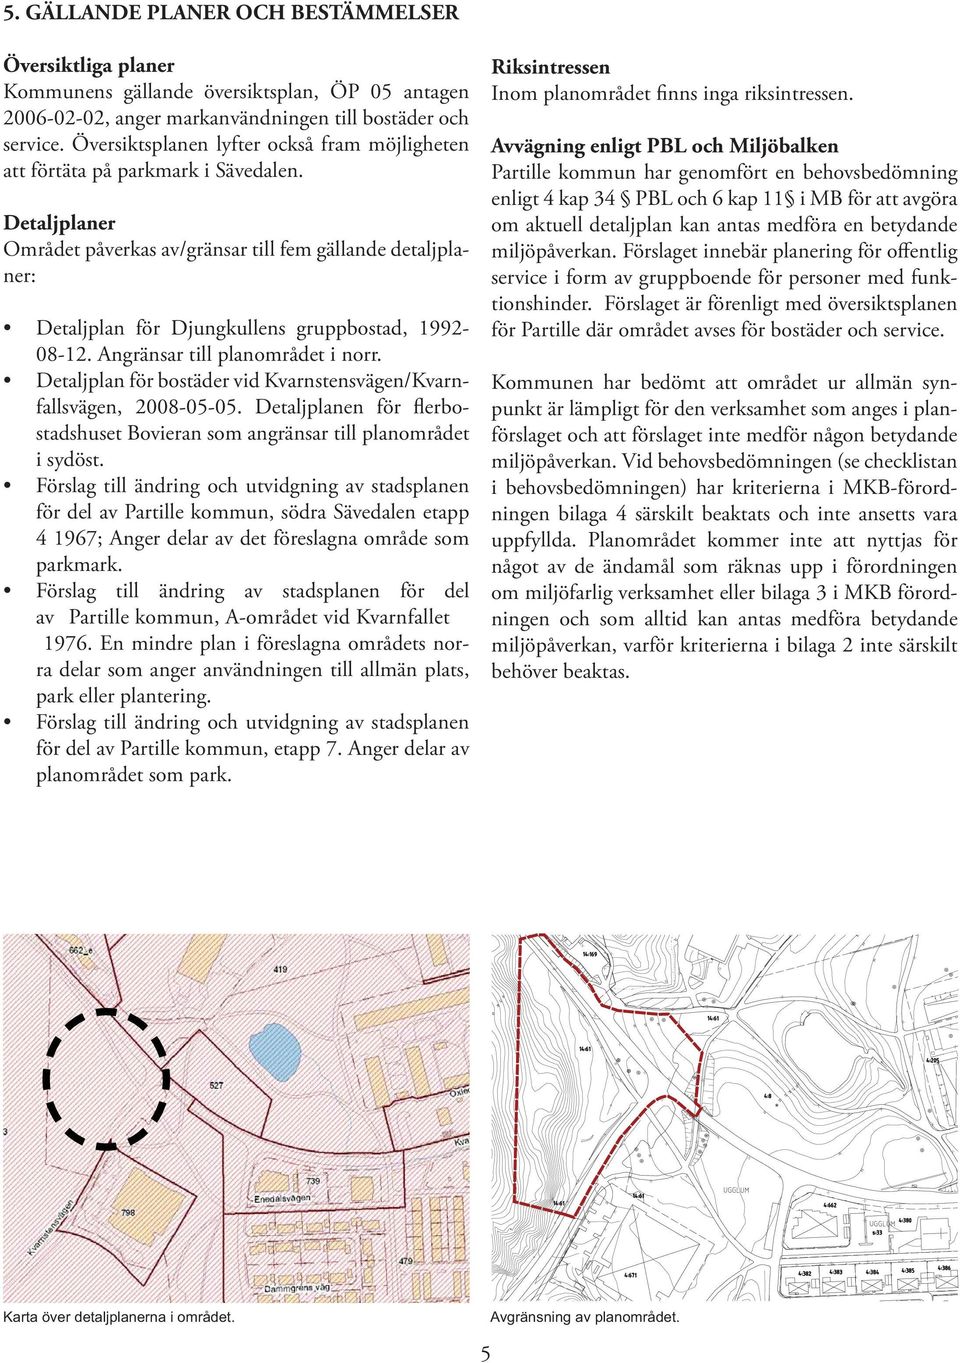 Detaljplaner Området påverkas av/gränsar till fem gällande detaljplaner: Detaljplan för Djungkullens gruppbostad, 1992-08-12. Angränsar till planområdet i norr.